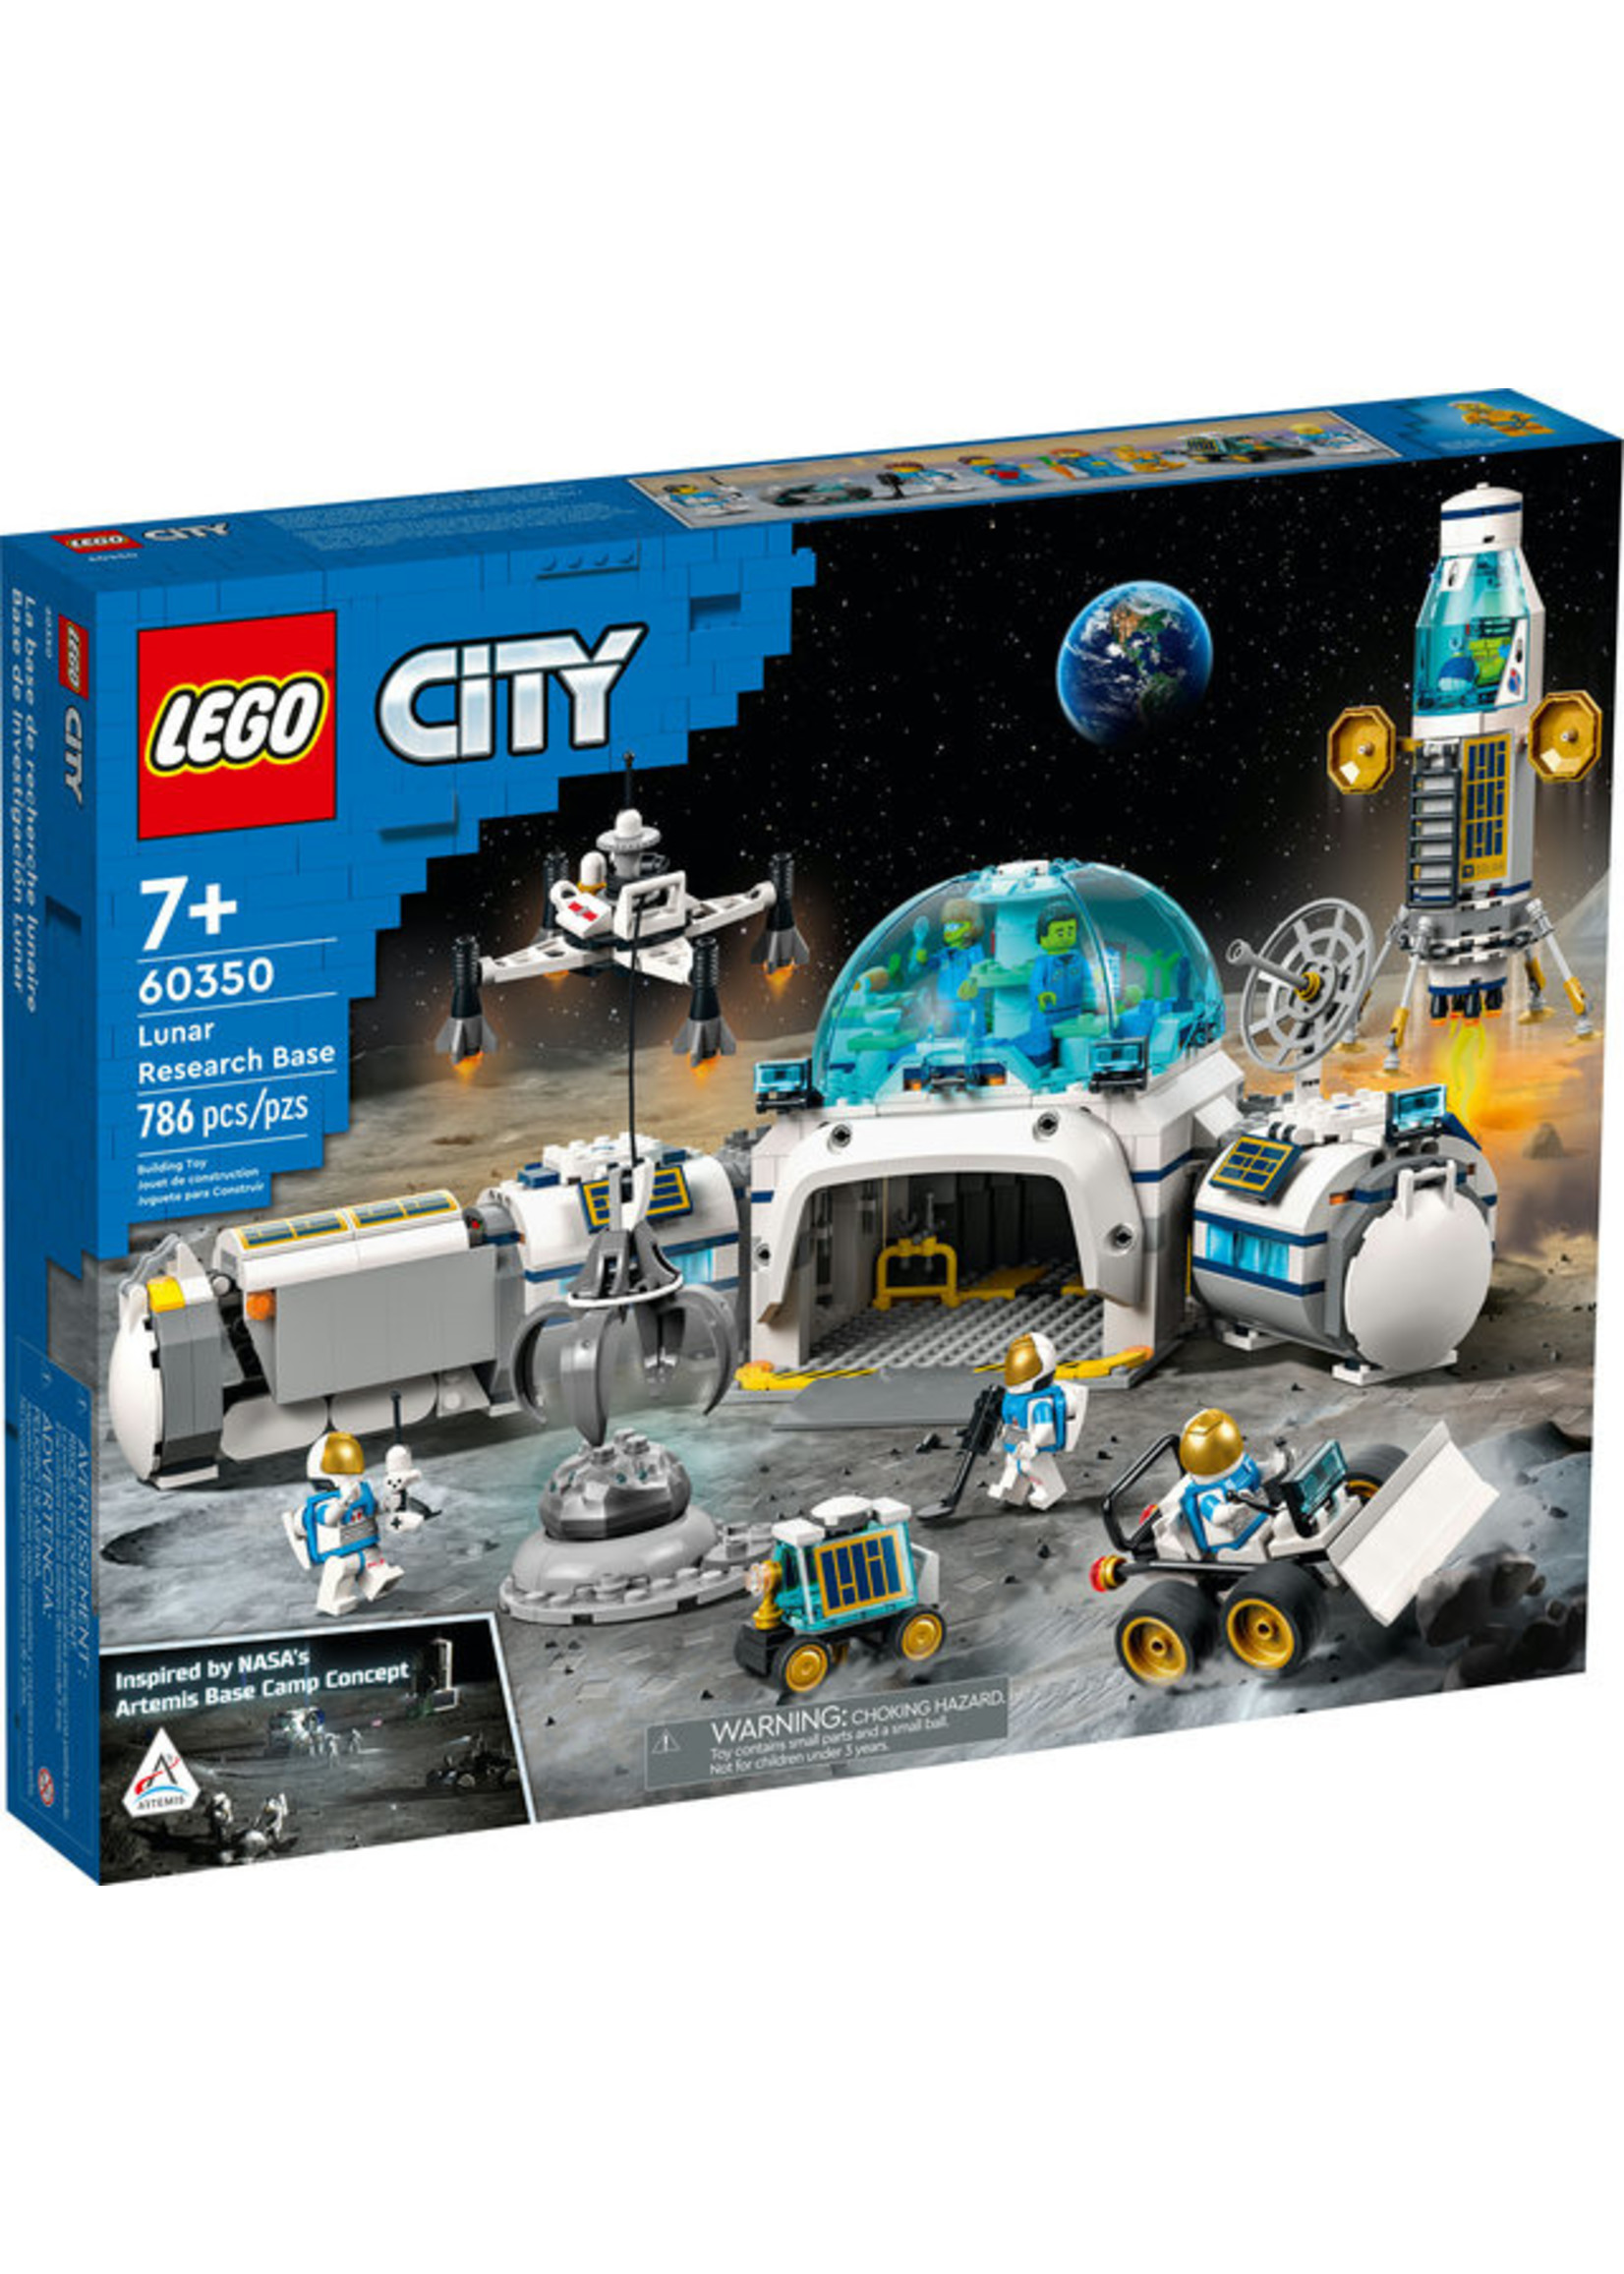 Lego 60350 - Lunar Research Base